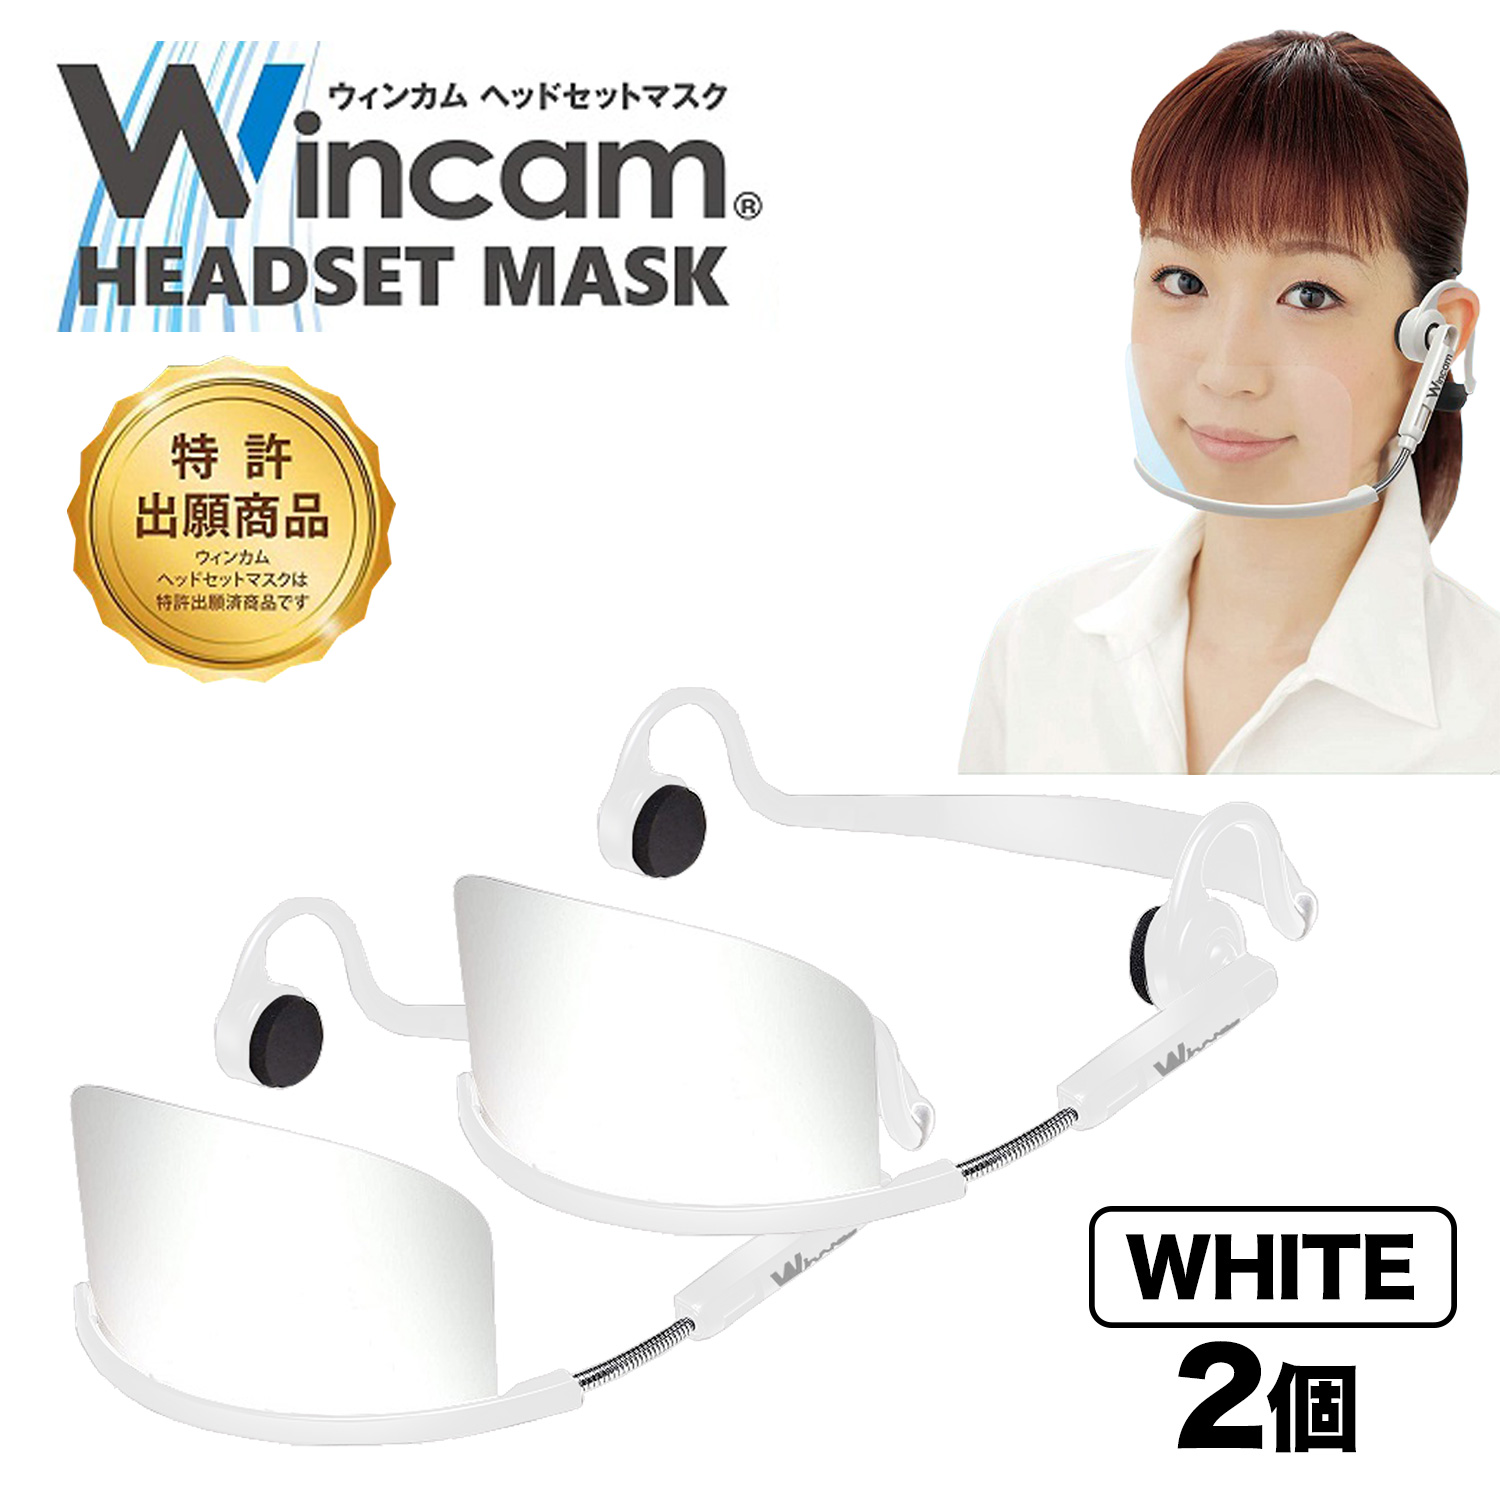 ウィンカム 透明衛生マスク/ヘッドセットマスク W-HSM-2W (sb)【メール便不可】　ホワイト 2個セット ホワイト